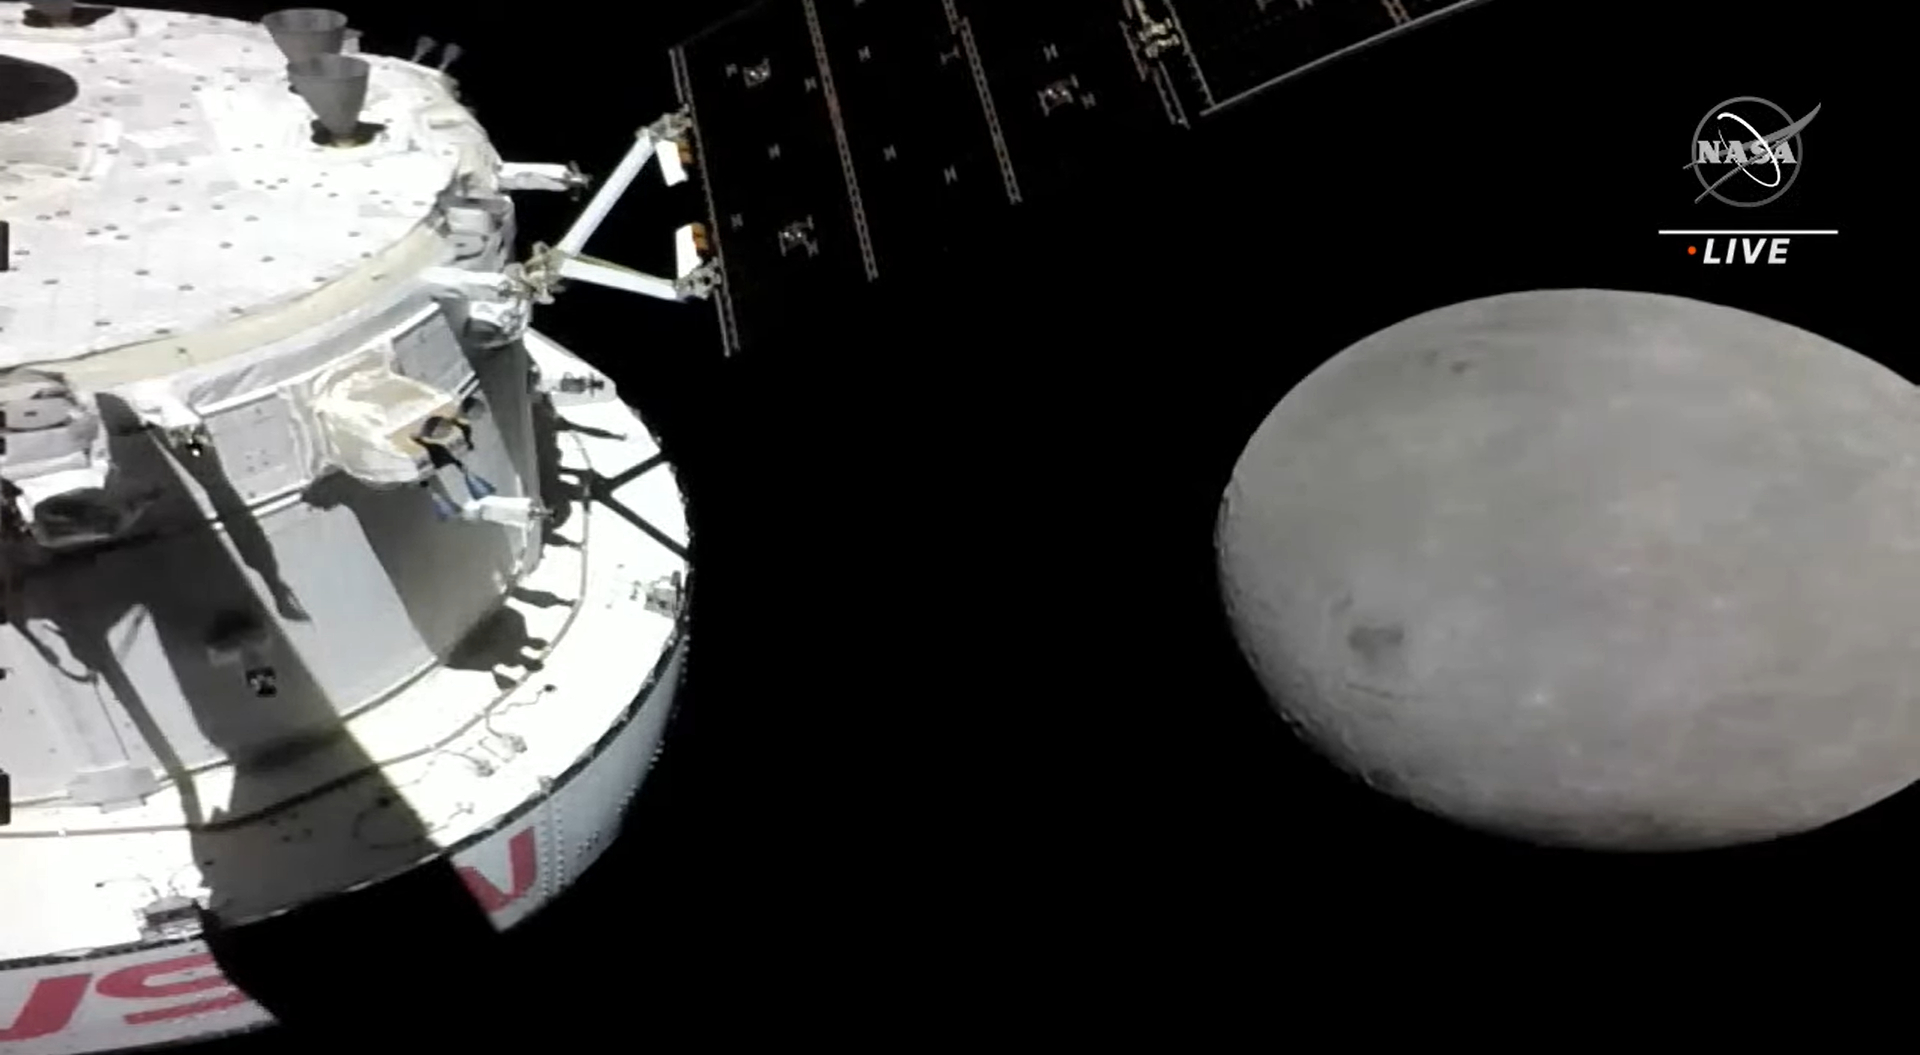 orion module approaching moon